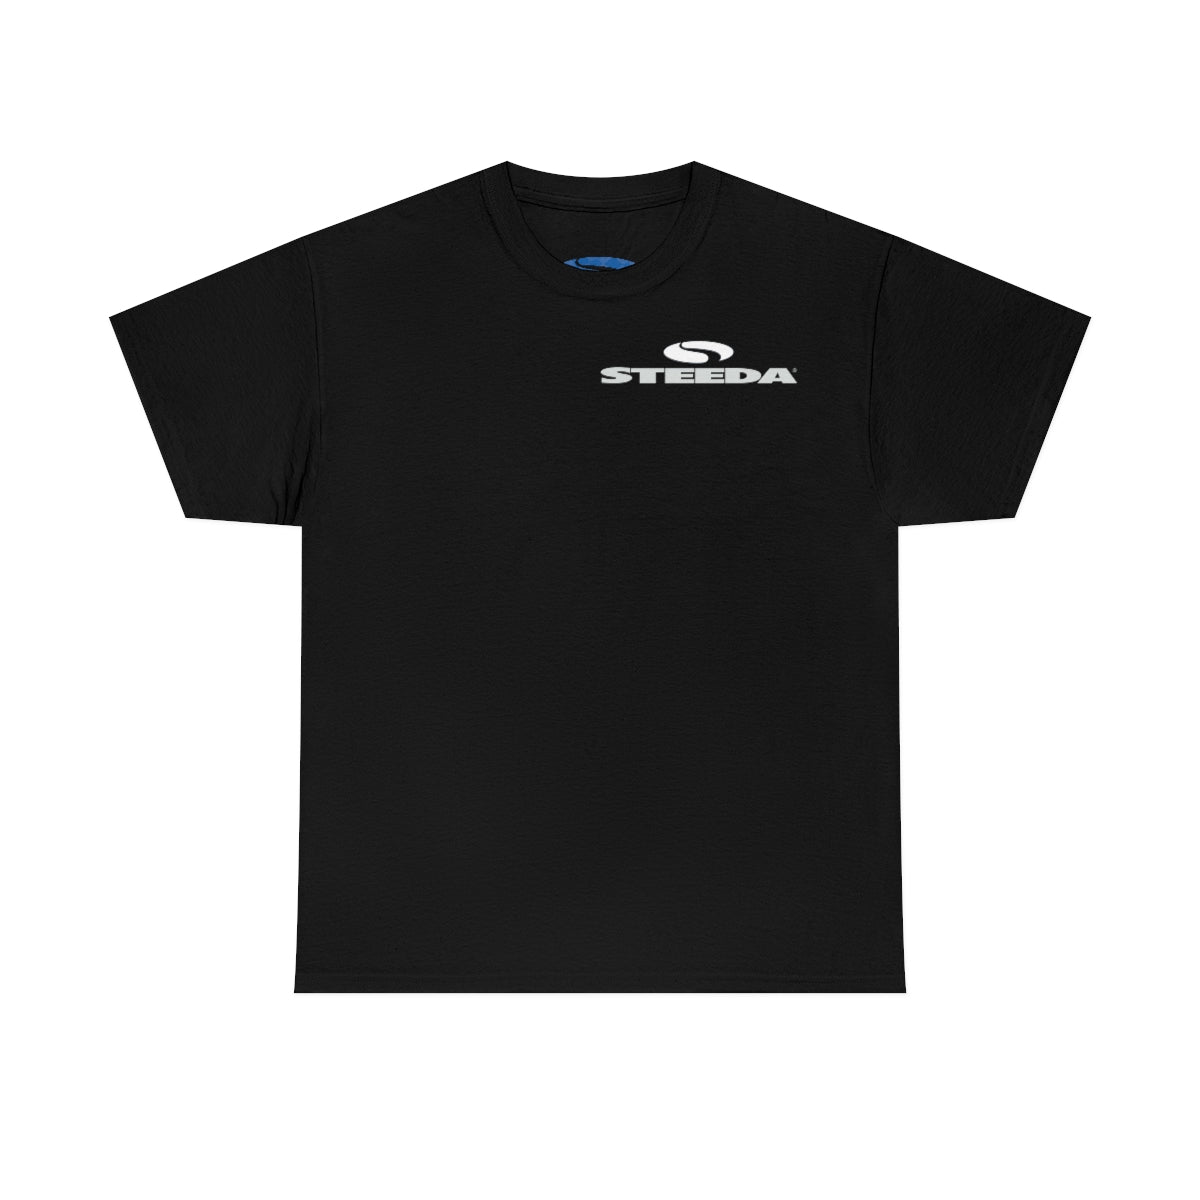 Černé bavlněné tričko Steeda "Mustang Silhouette" - design vpředu a vzadu